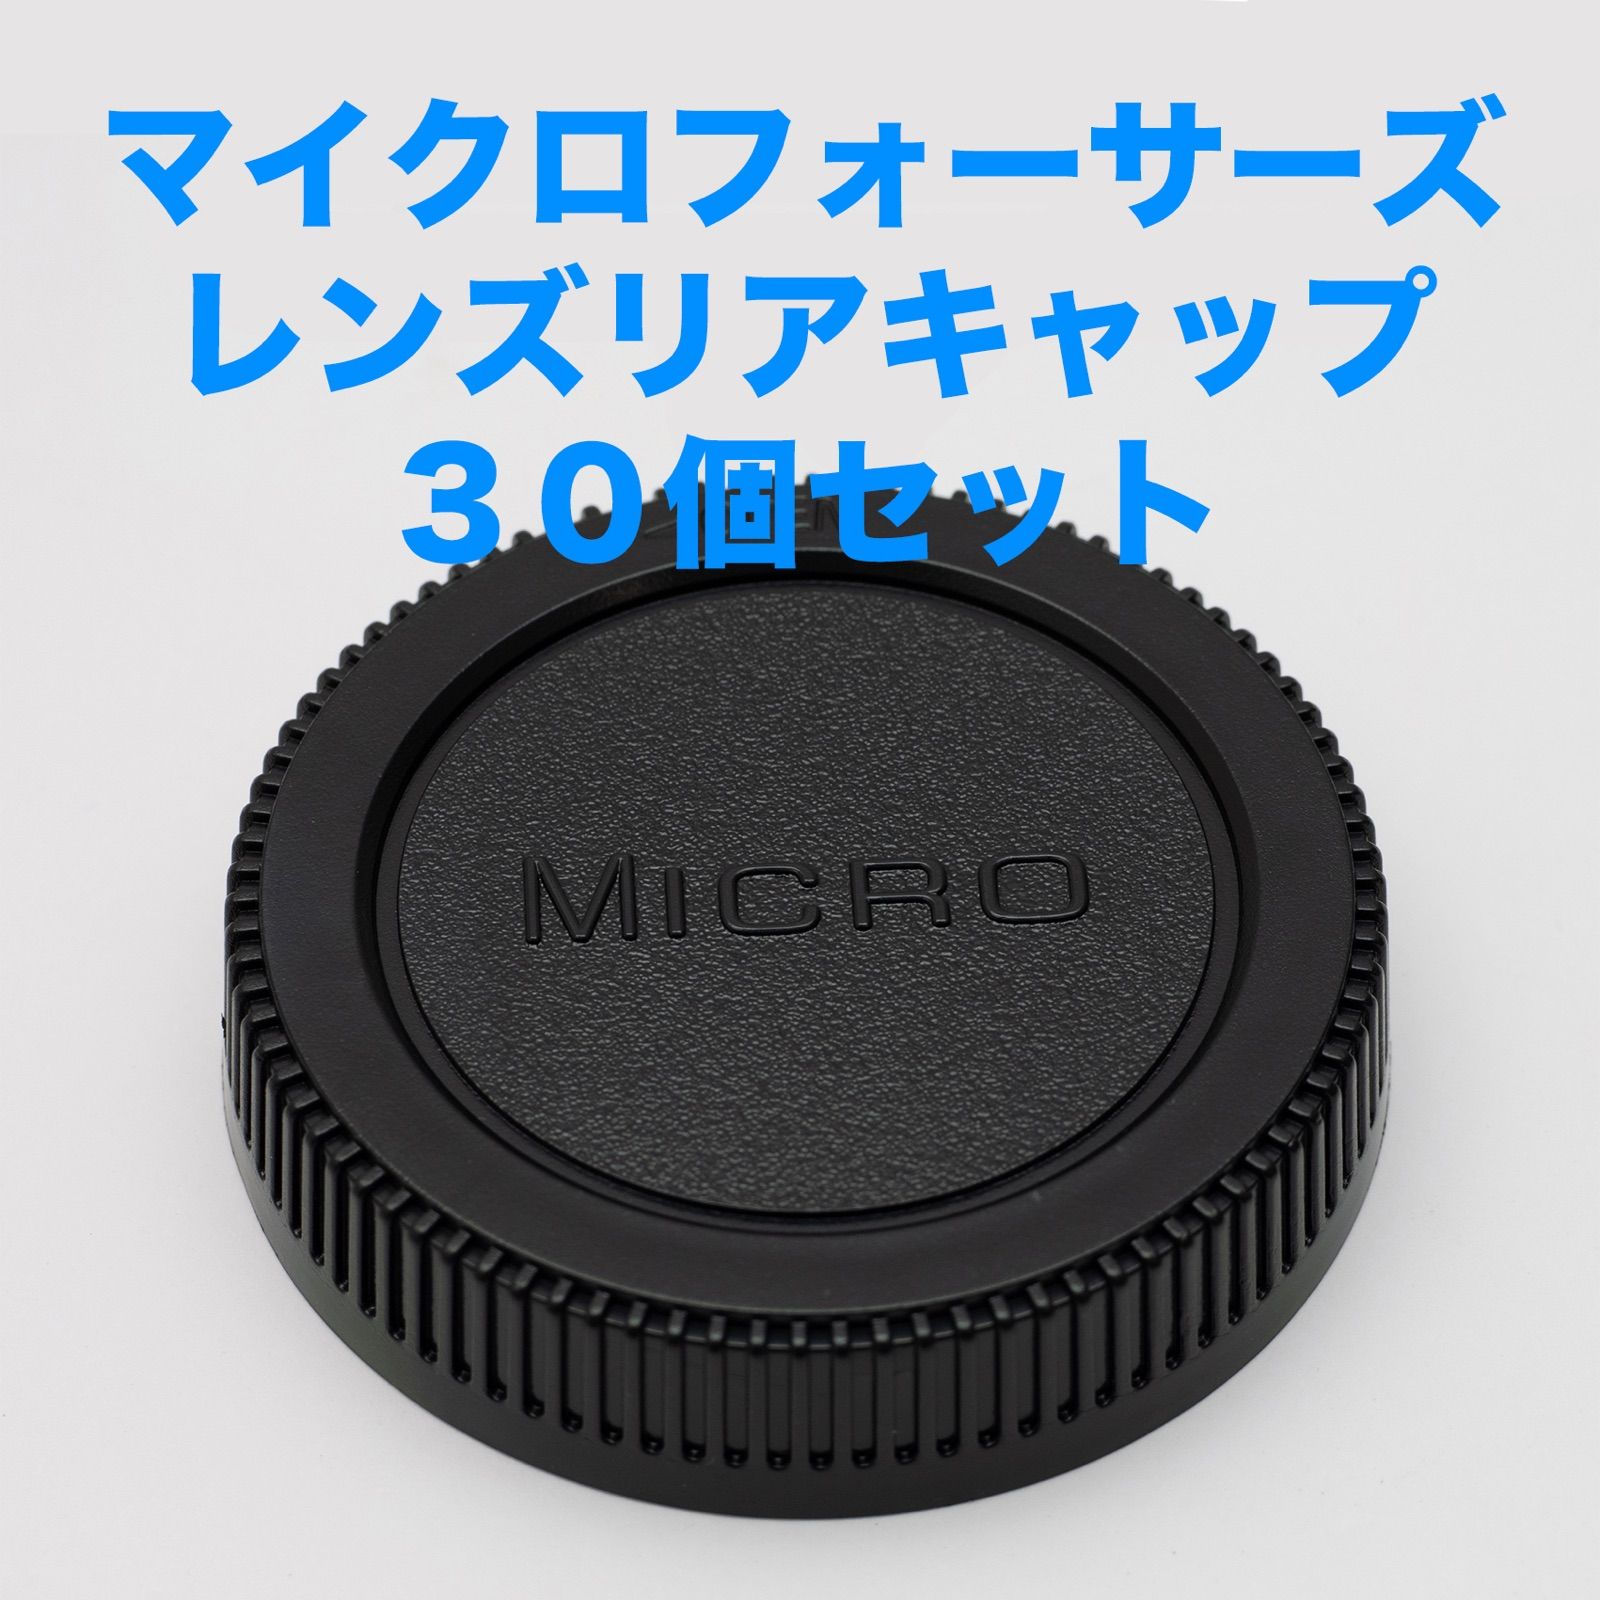 マイクロフォーサーズ レンズリアキャップ 30個セット - メルカリ